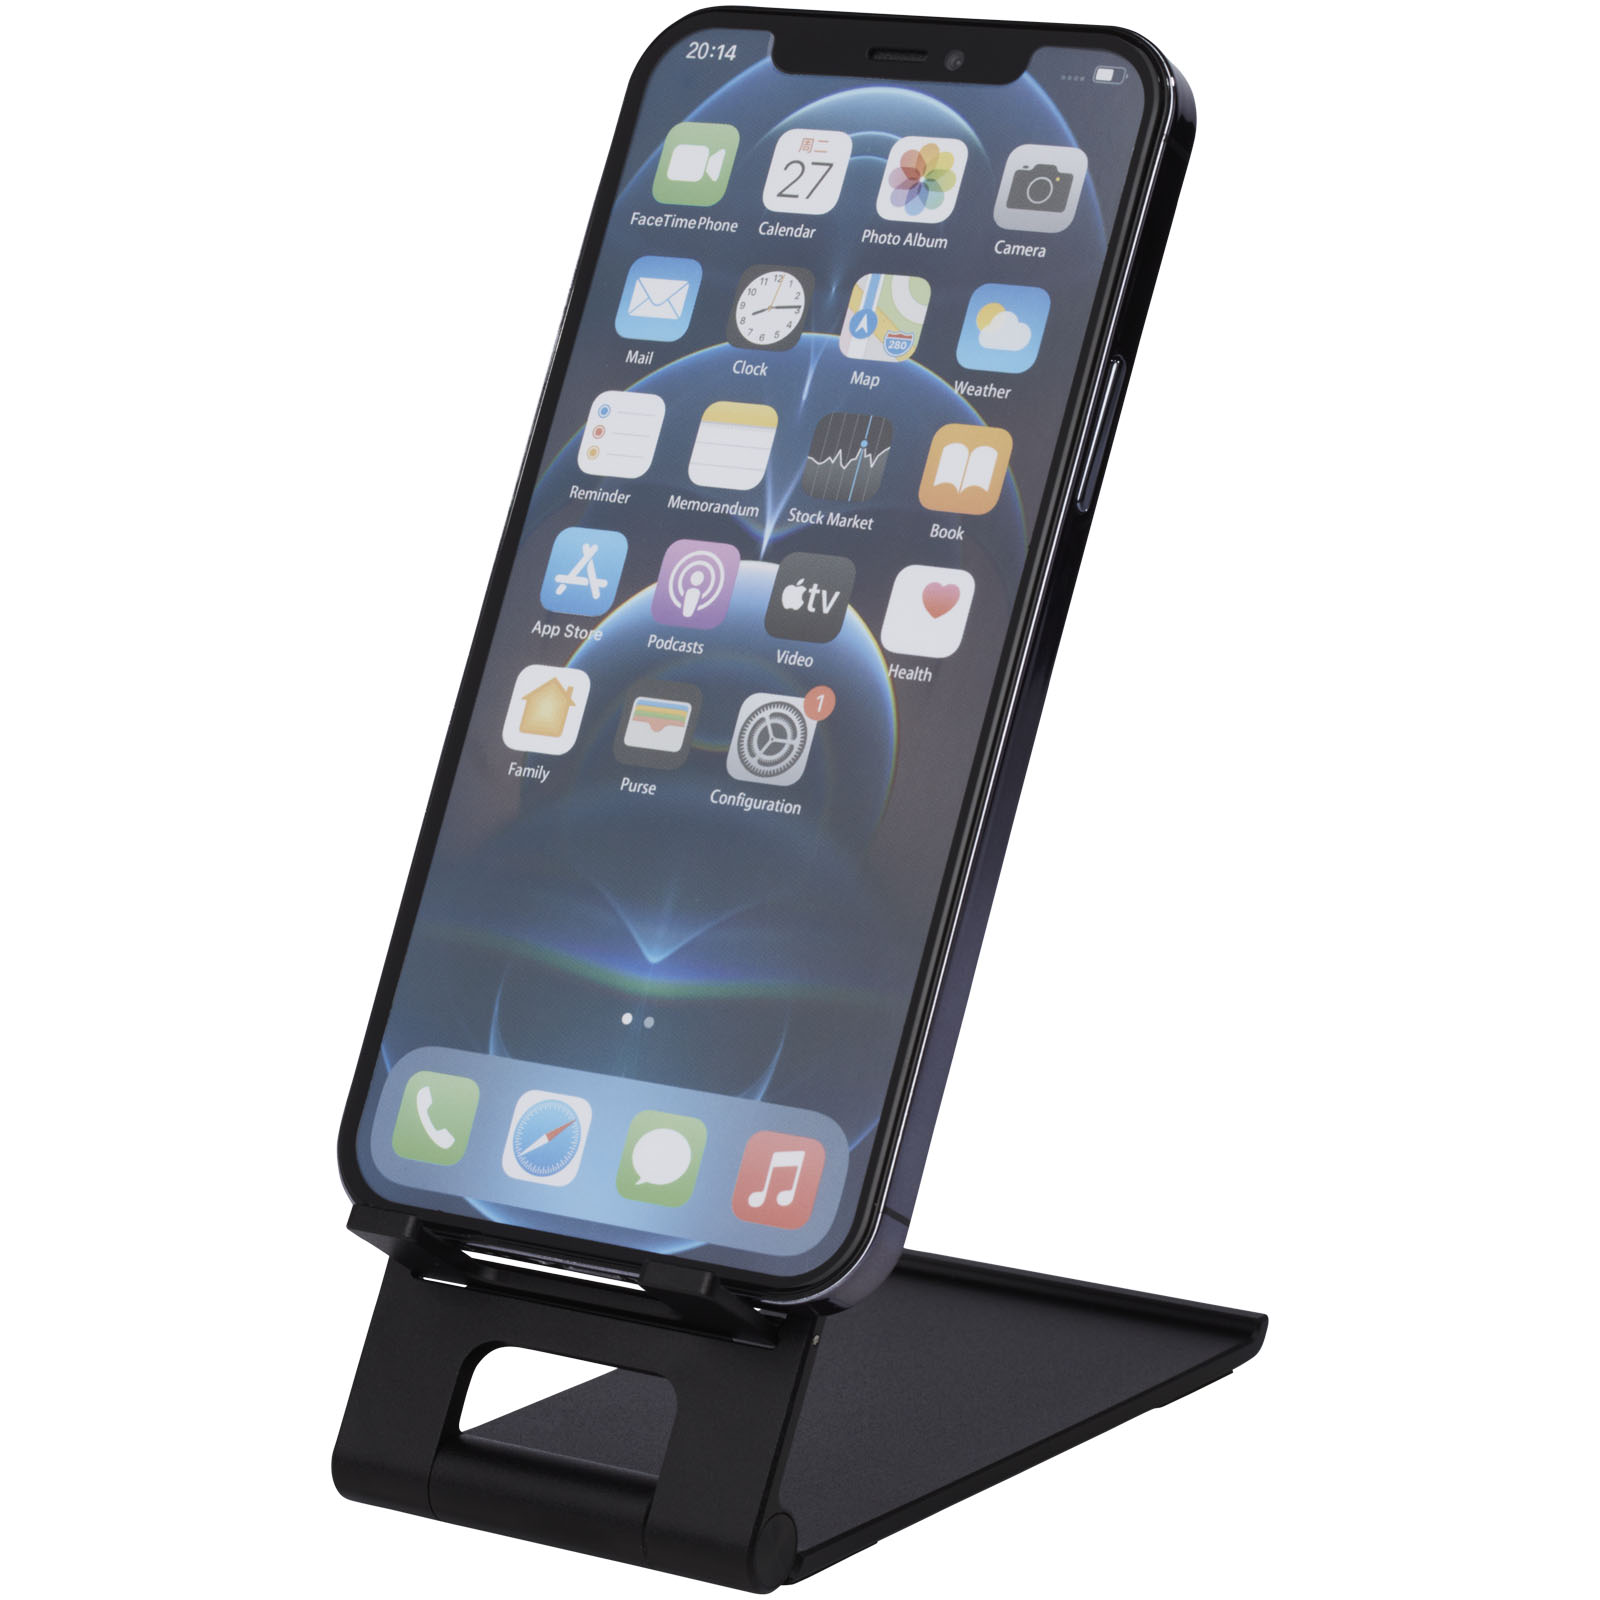 Advertising Telephone & Tablet Accessories - Rise slim aluminium phone stand